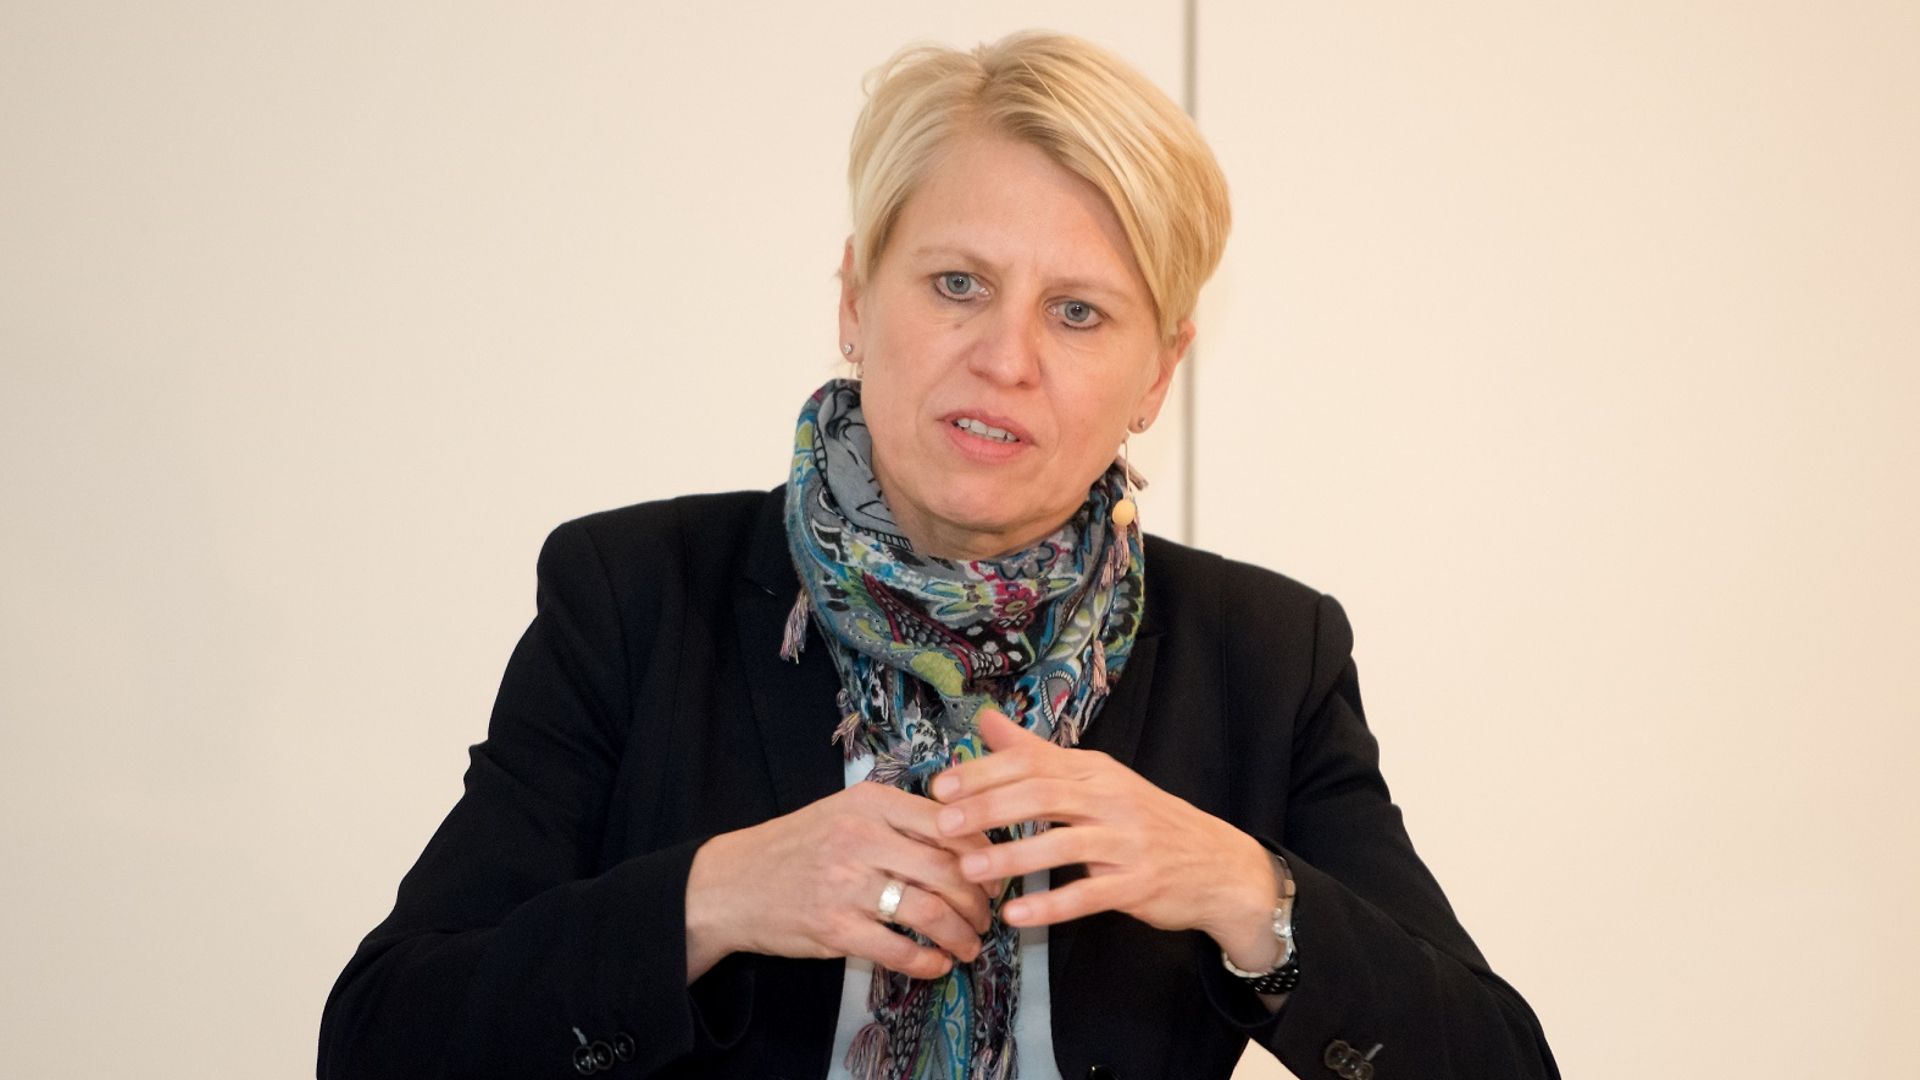 Doris Fitschen, Teammanagerin der DFB Frauen-Nationalmannschaft